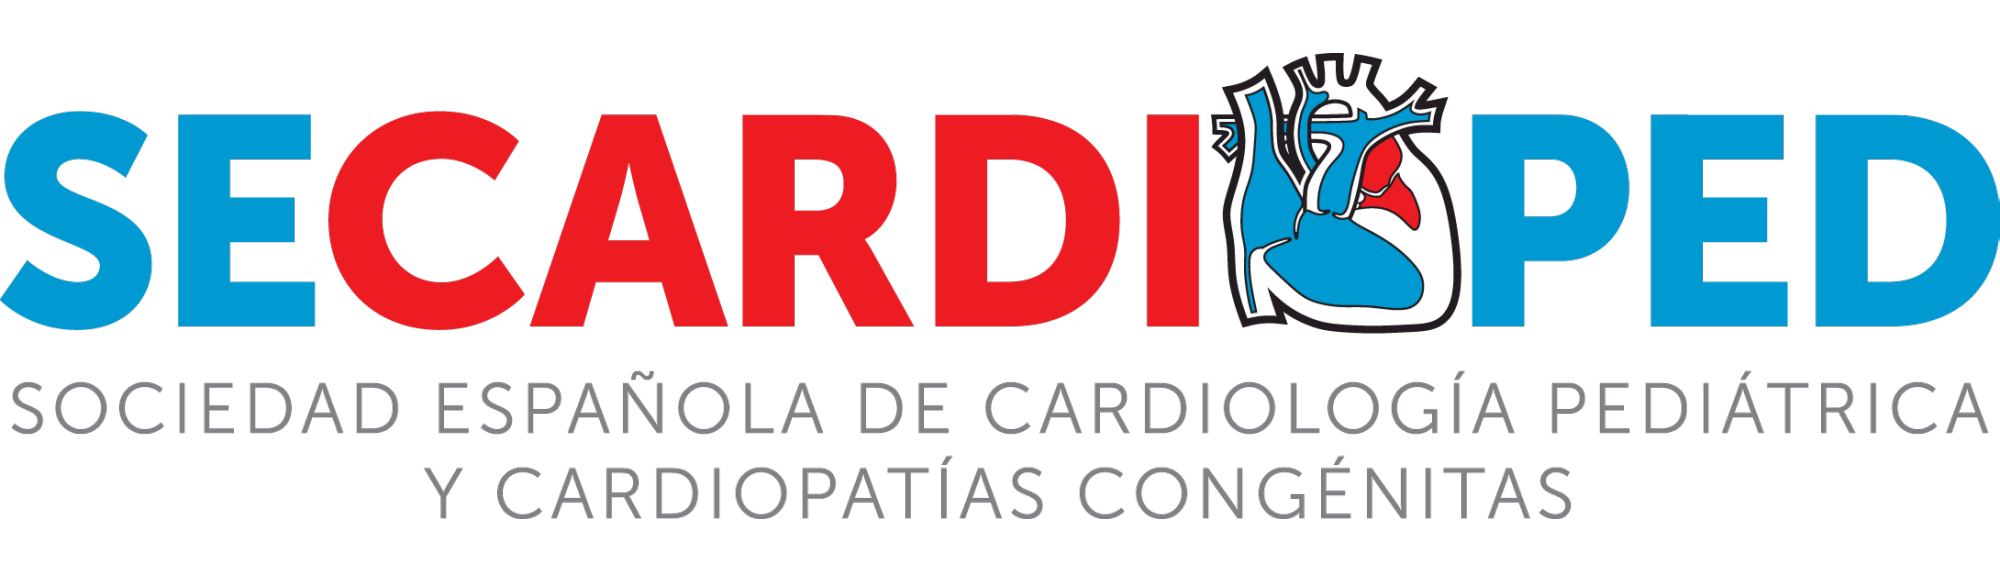 Sociedad Espa�ola de Cardiologia Pediatrica y Cardiopatias Congenitas